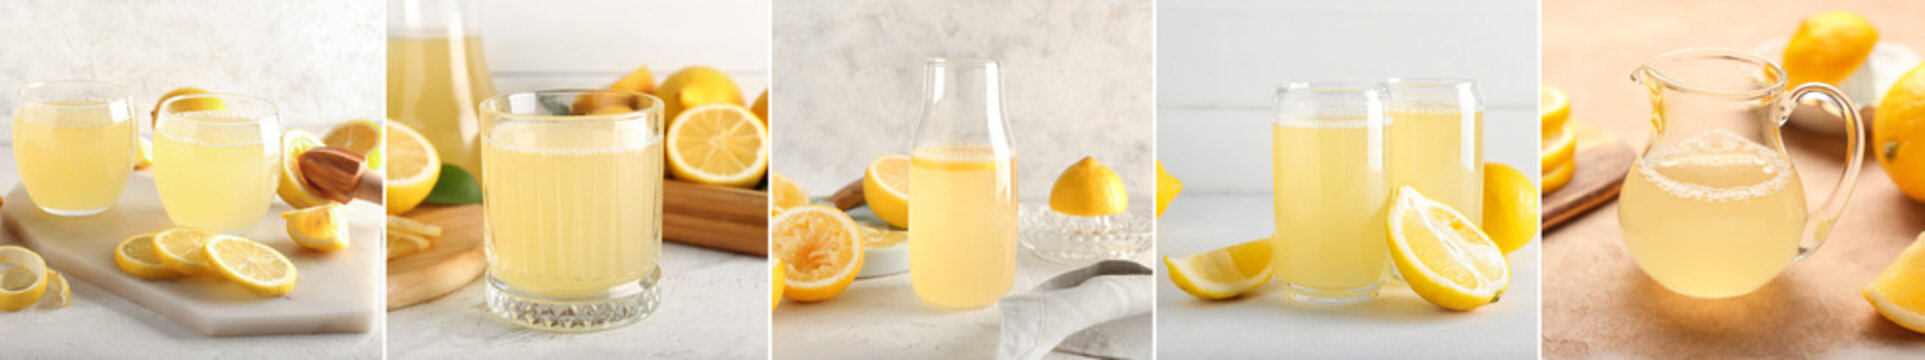 Set of fresh lemon juice on light background